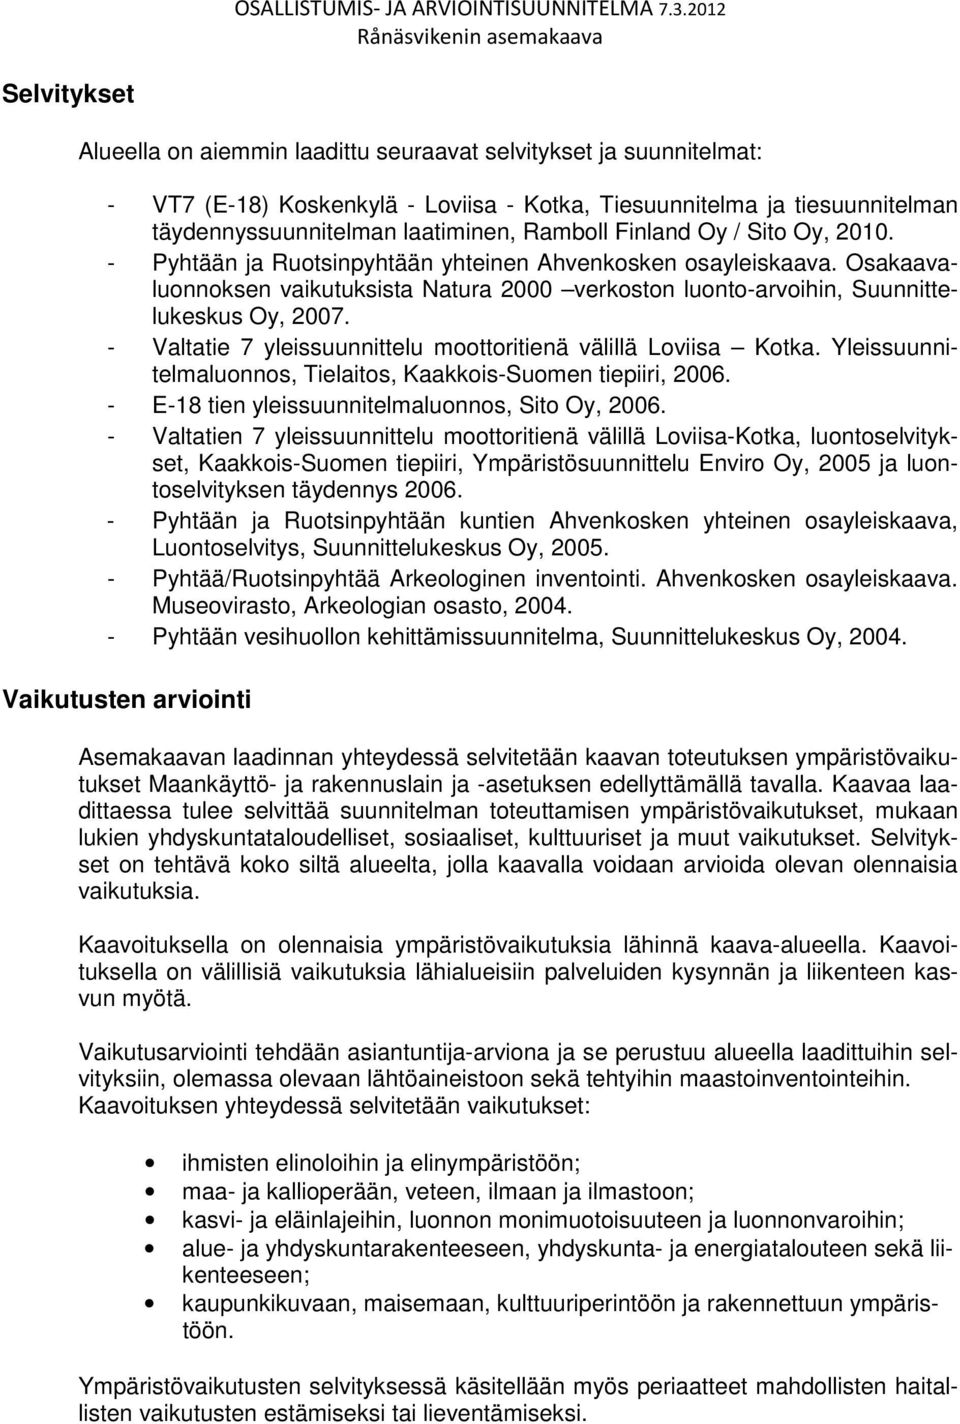 Ramboll Finland Oy / Sito Oy, 2010. - Pyhtään ja Ruotsinpyhtään yhteinen Ahvenkosken osayleiskaava. Osakaavaluonnoksen vaikutuksista Natura 2000 verkoston luonto-arvoihin, Suunnittelukeskus Oy, 2007.